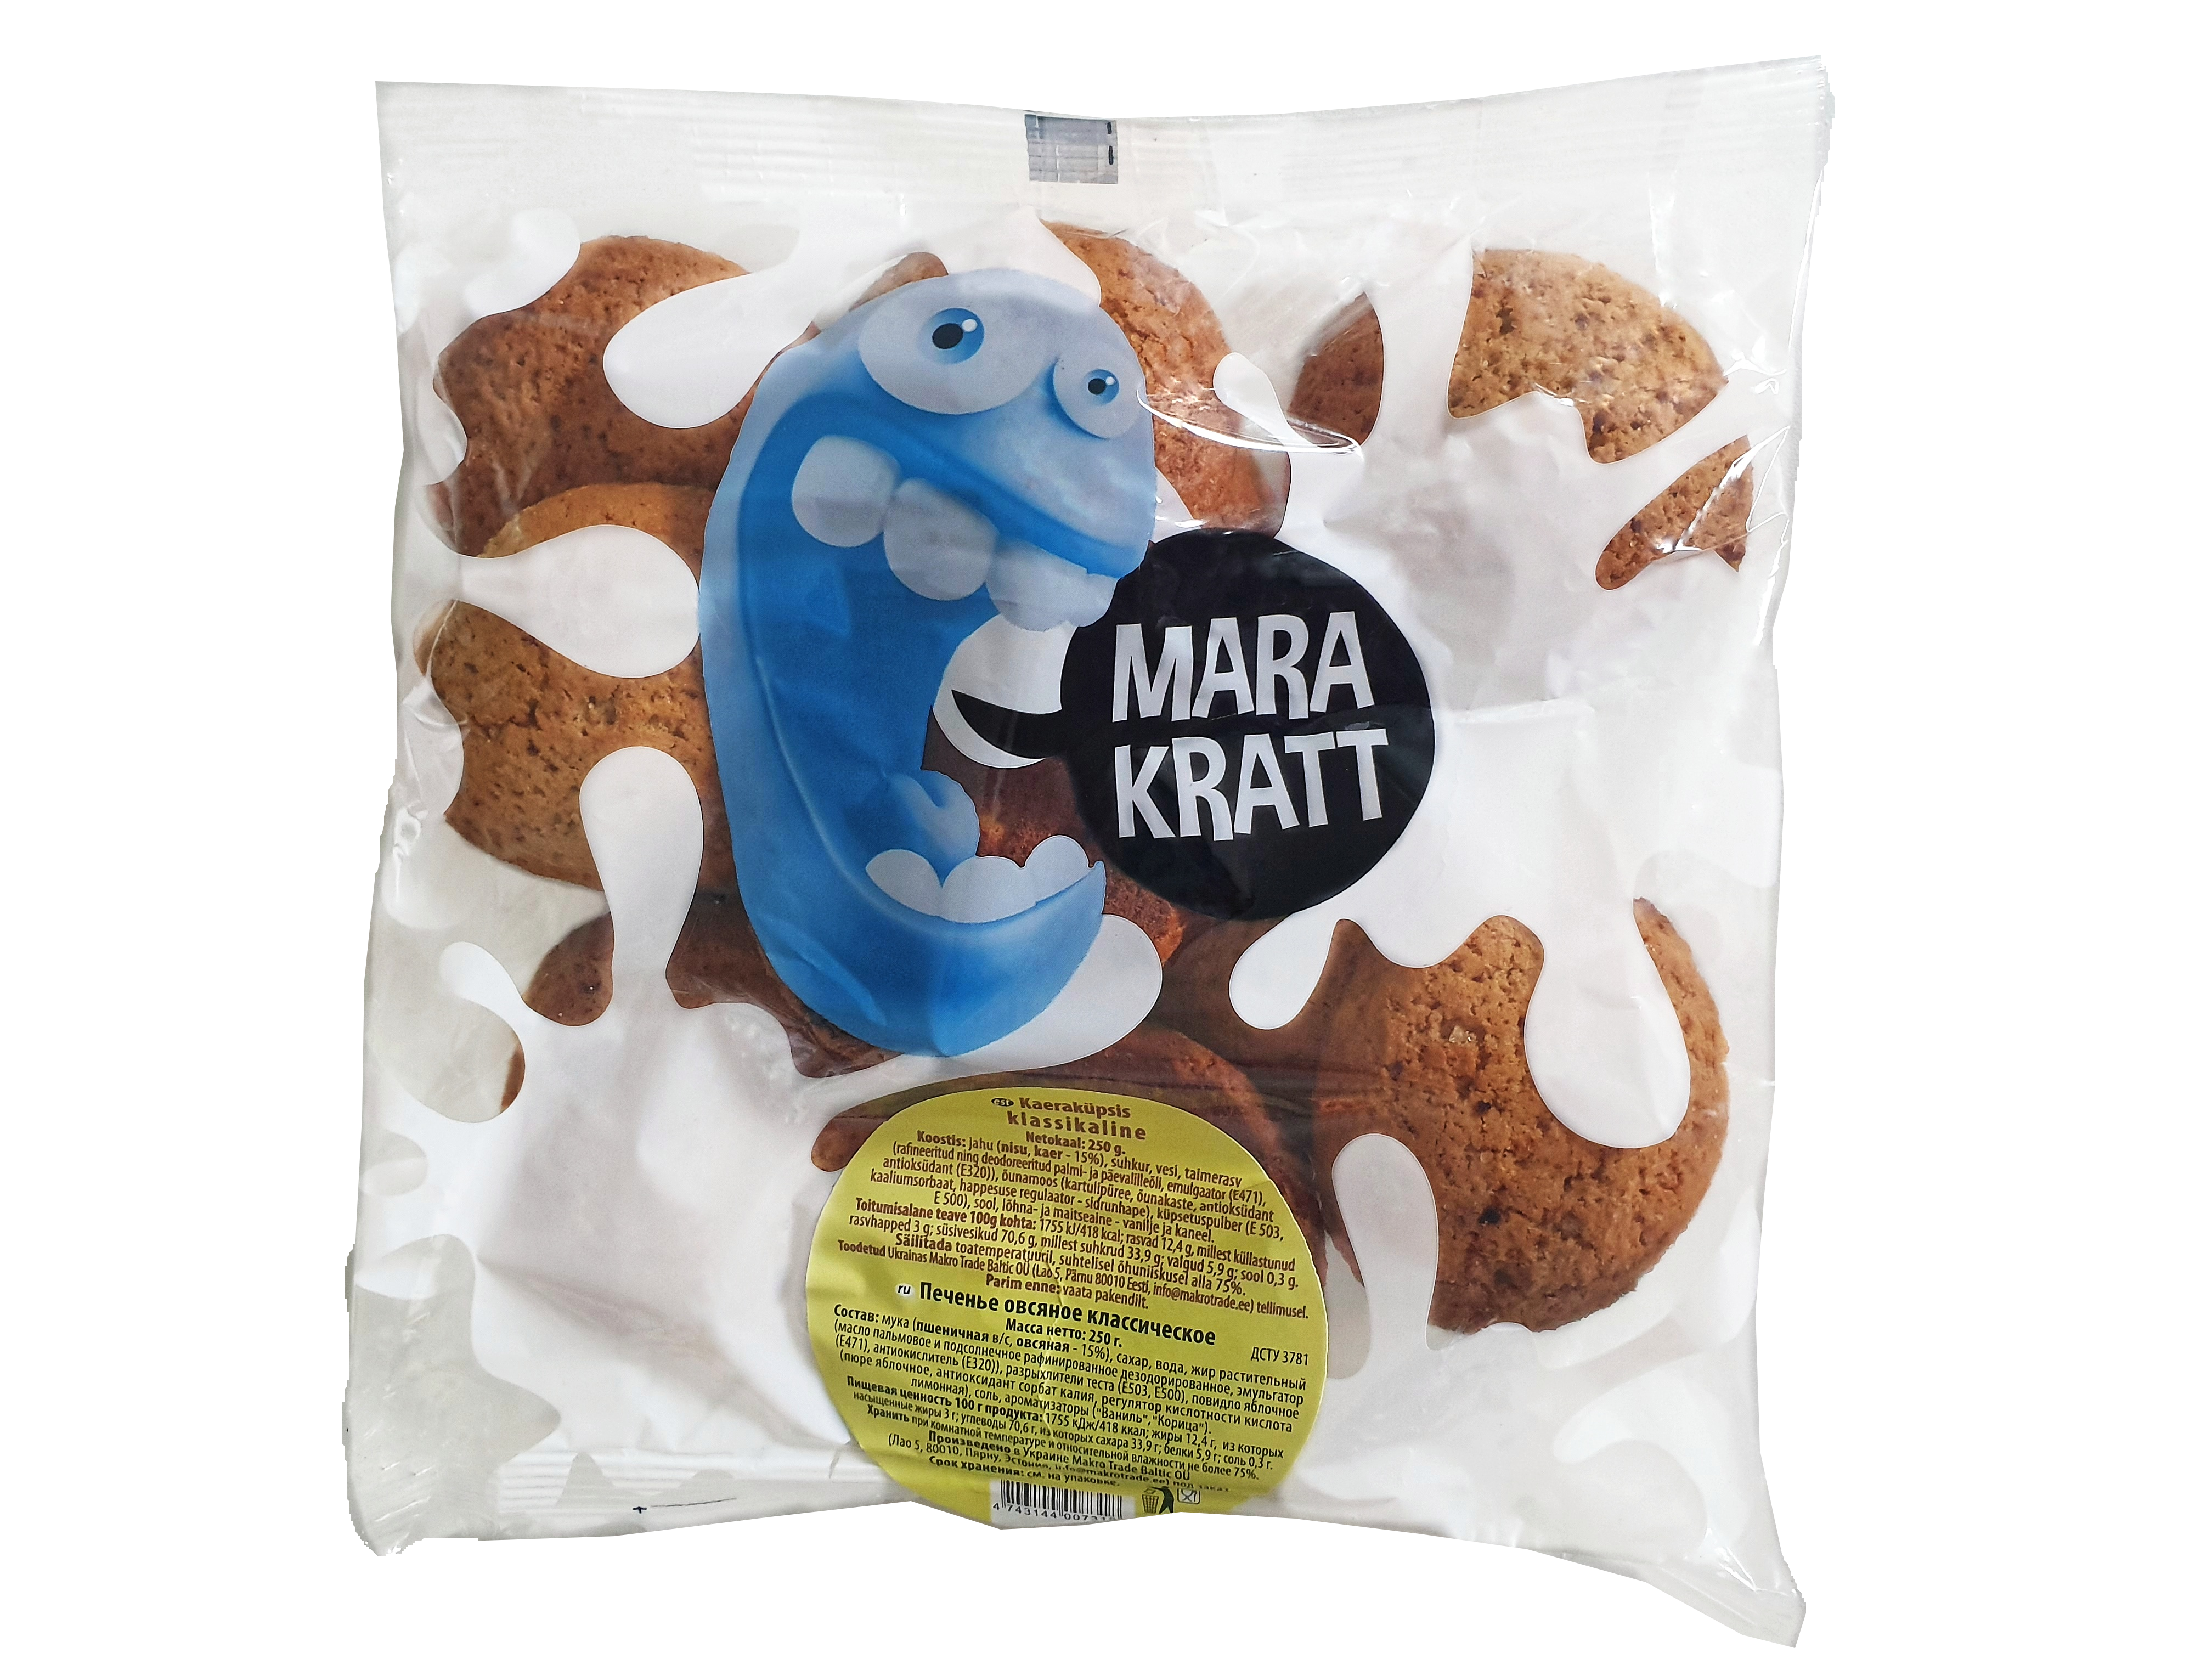 Marakratt classic oatmeal cookie 250g